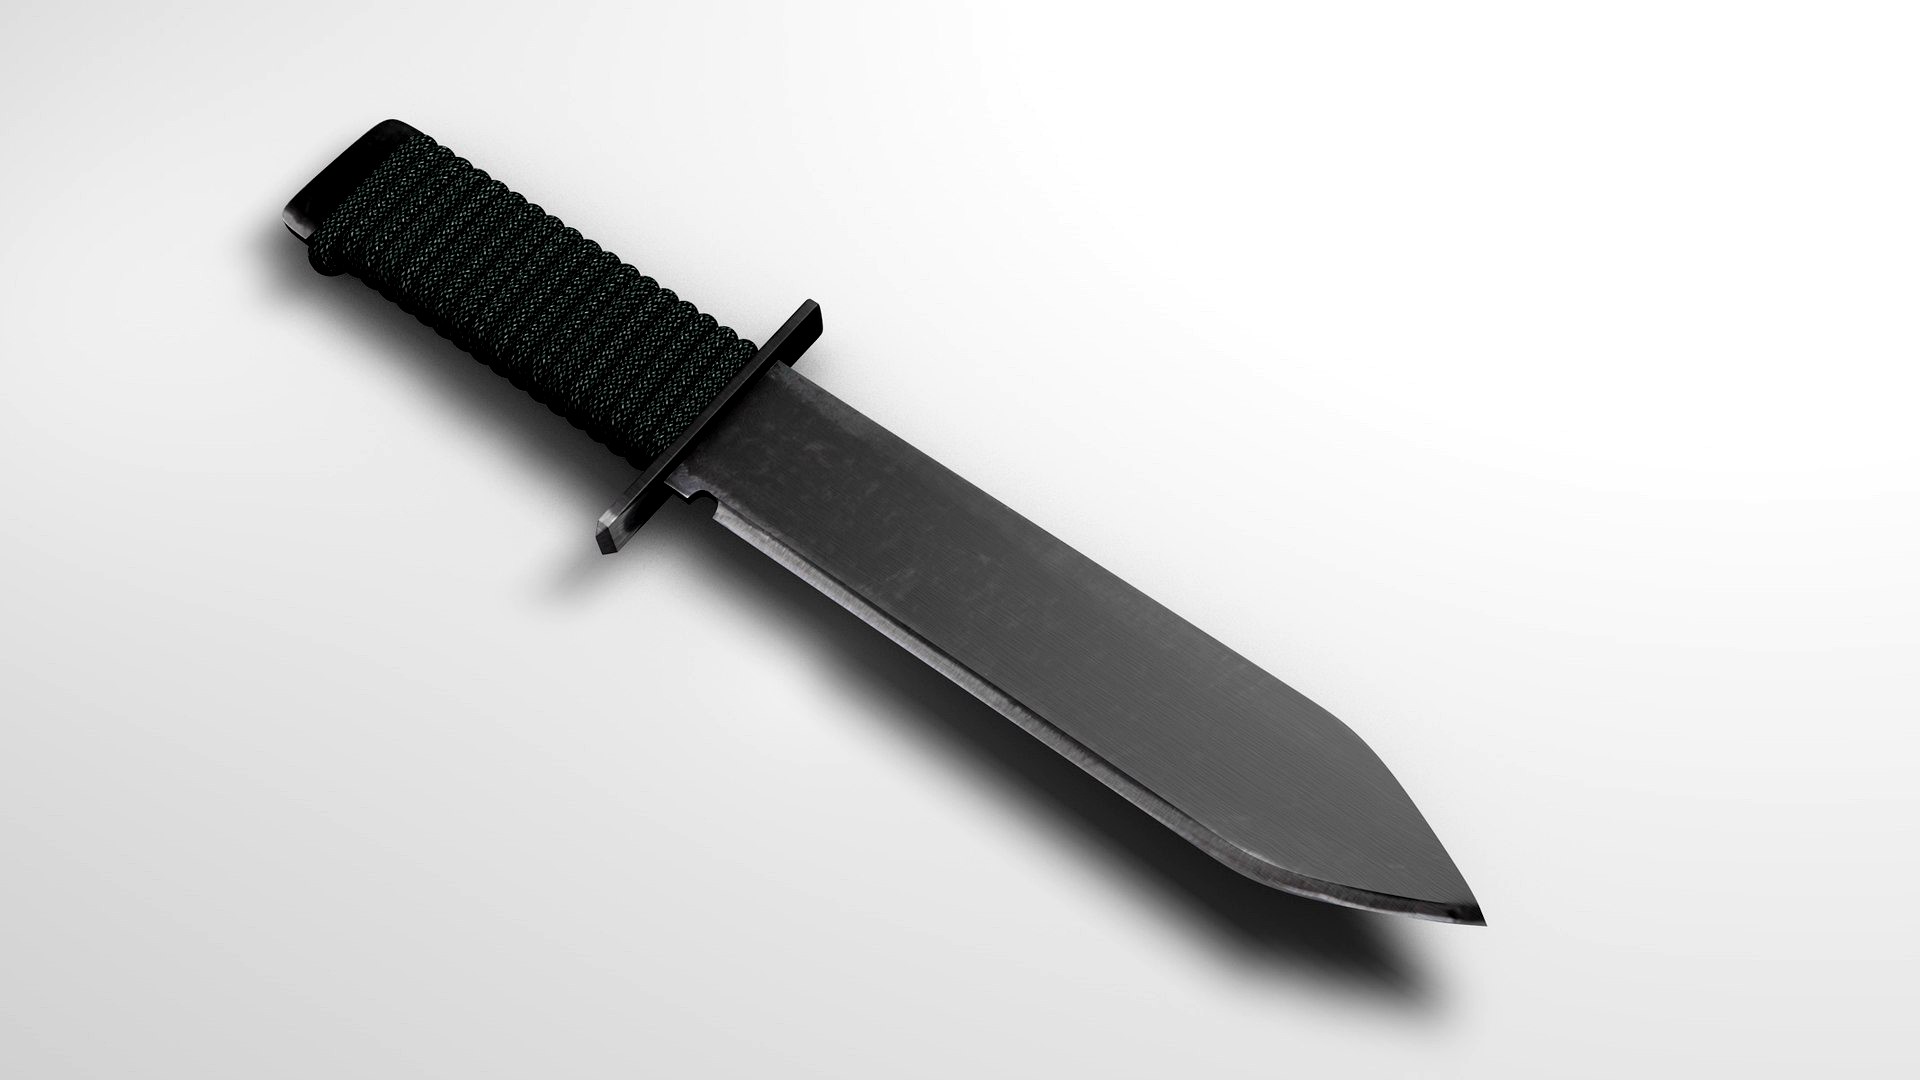 Bush knife.